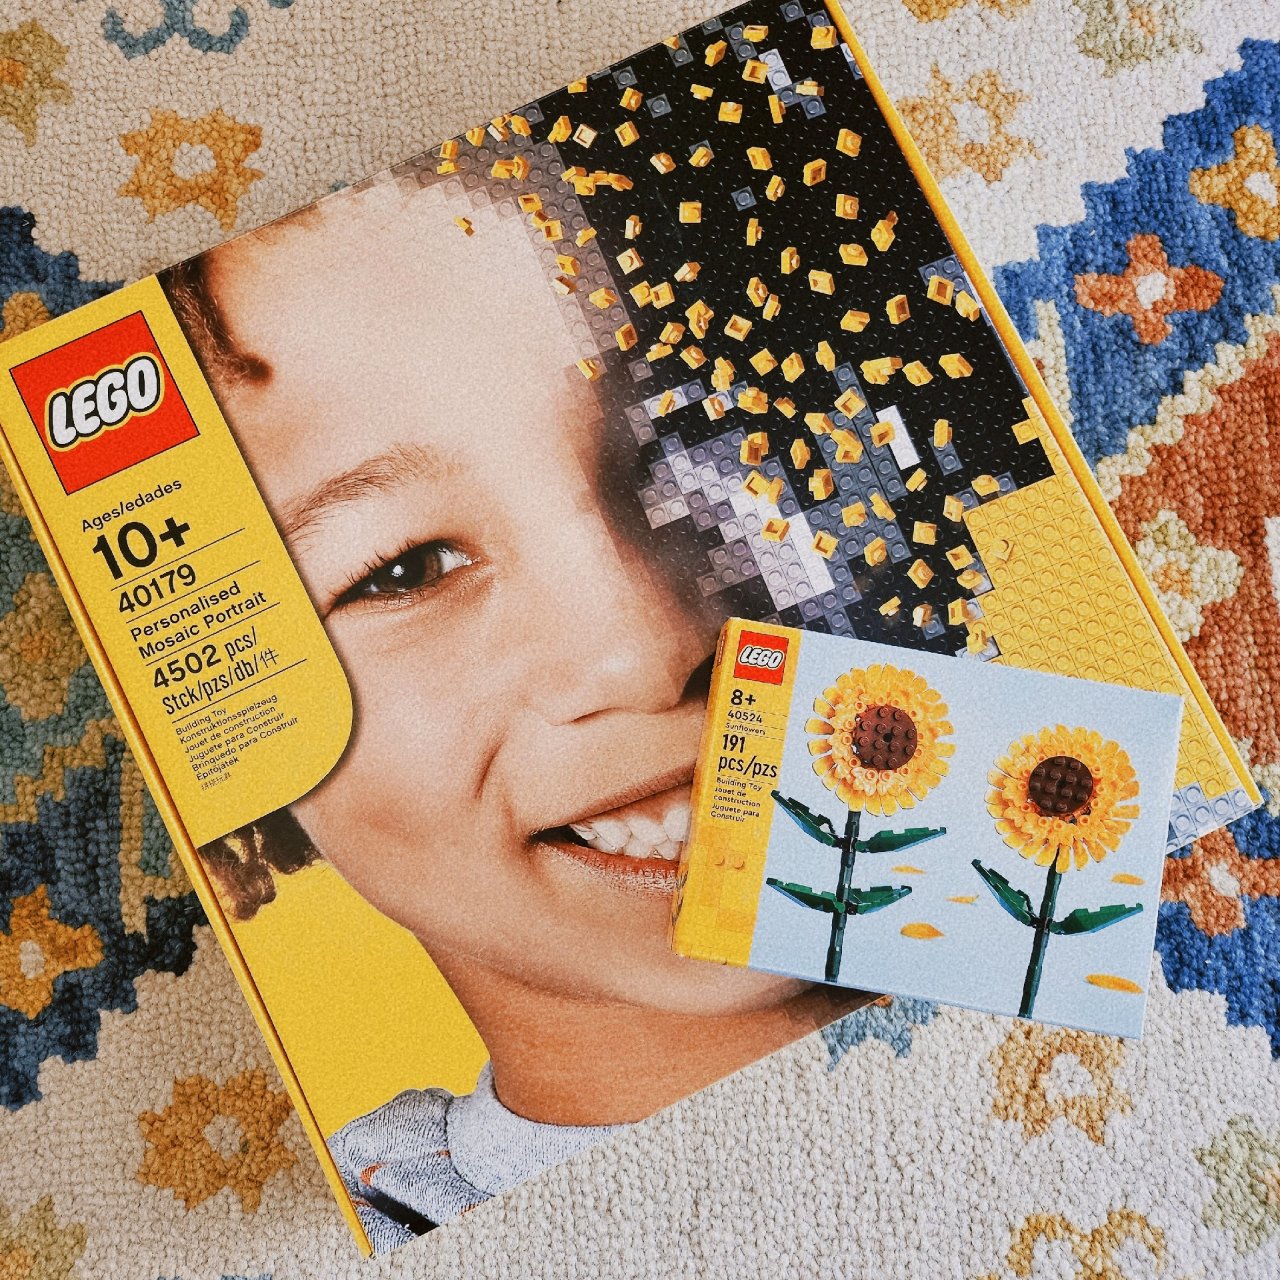 Lego马赛克肖像 AE返钱$15超划算...